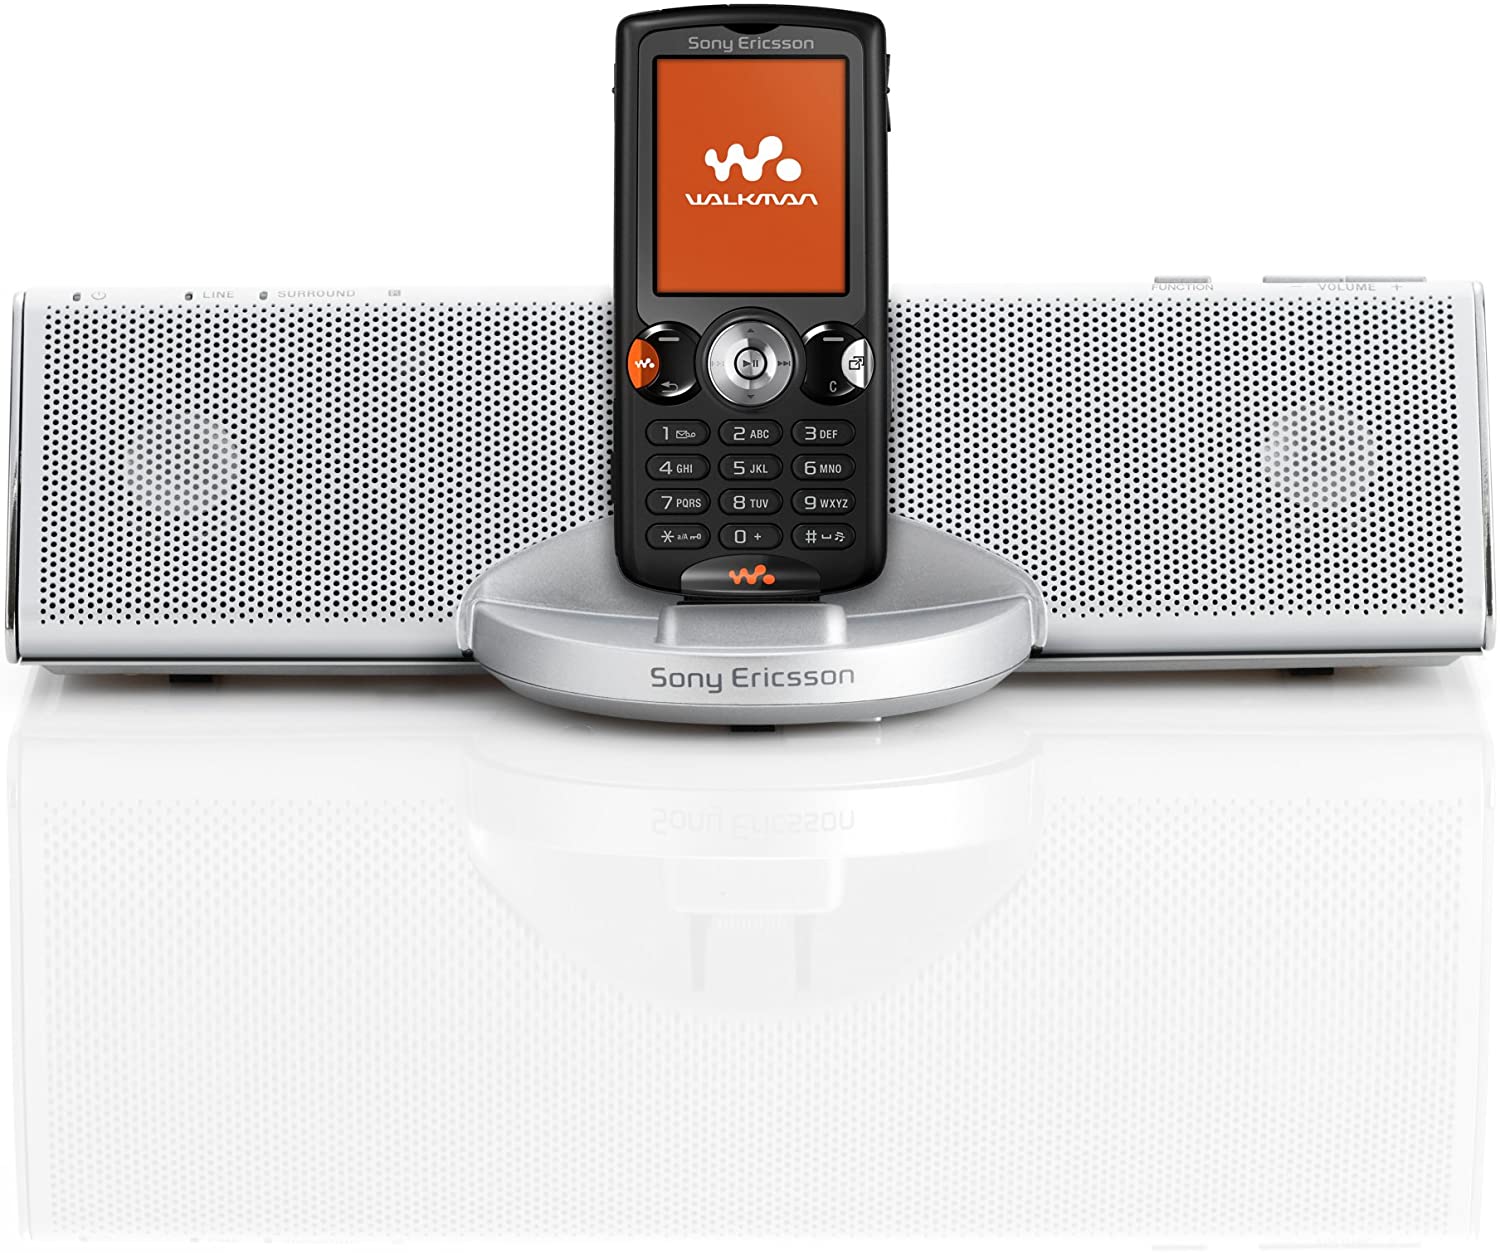 walkman|Walkman是一代人的情怀 回顾索尼爱立信W810c